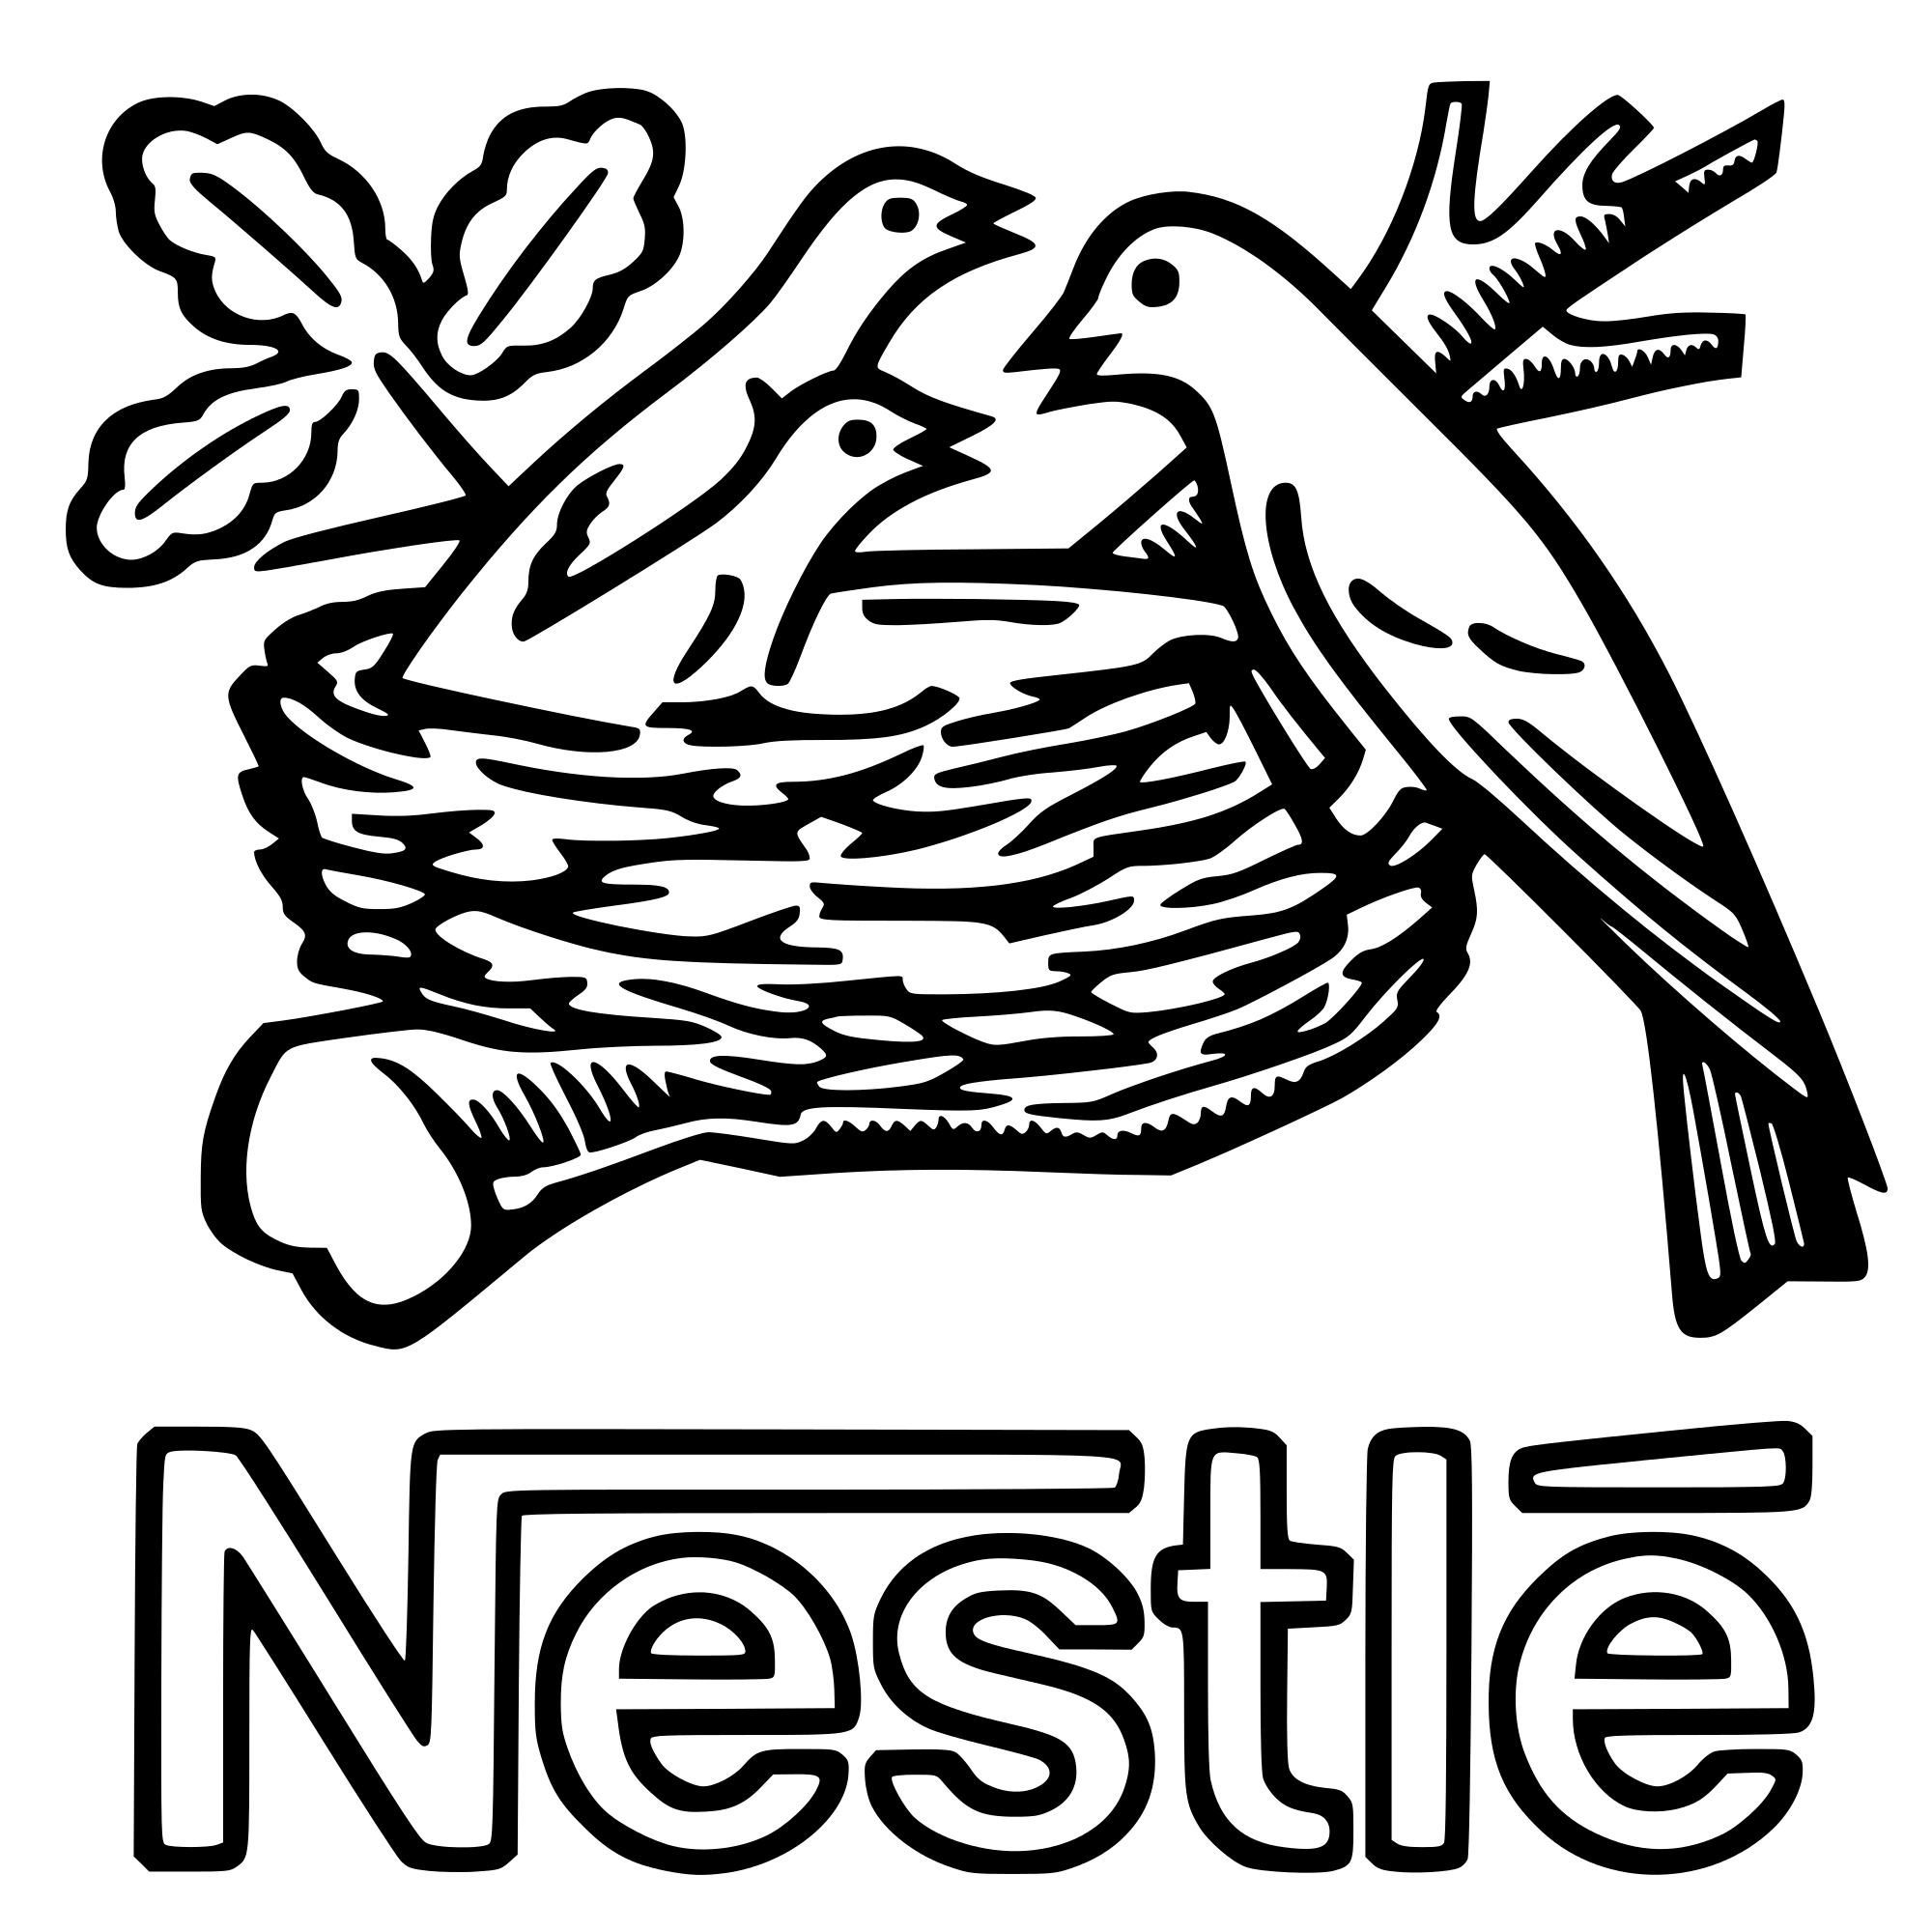 Nestlé Logo - File:Old Nestlé logo.svg - Wikimedia Commons